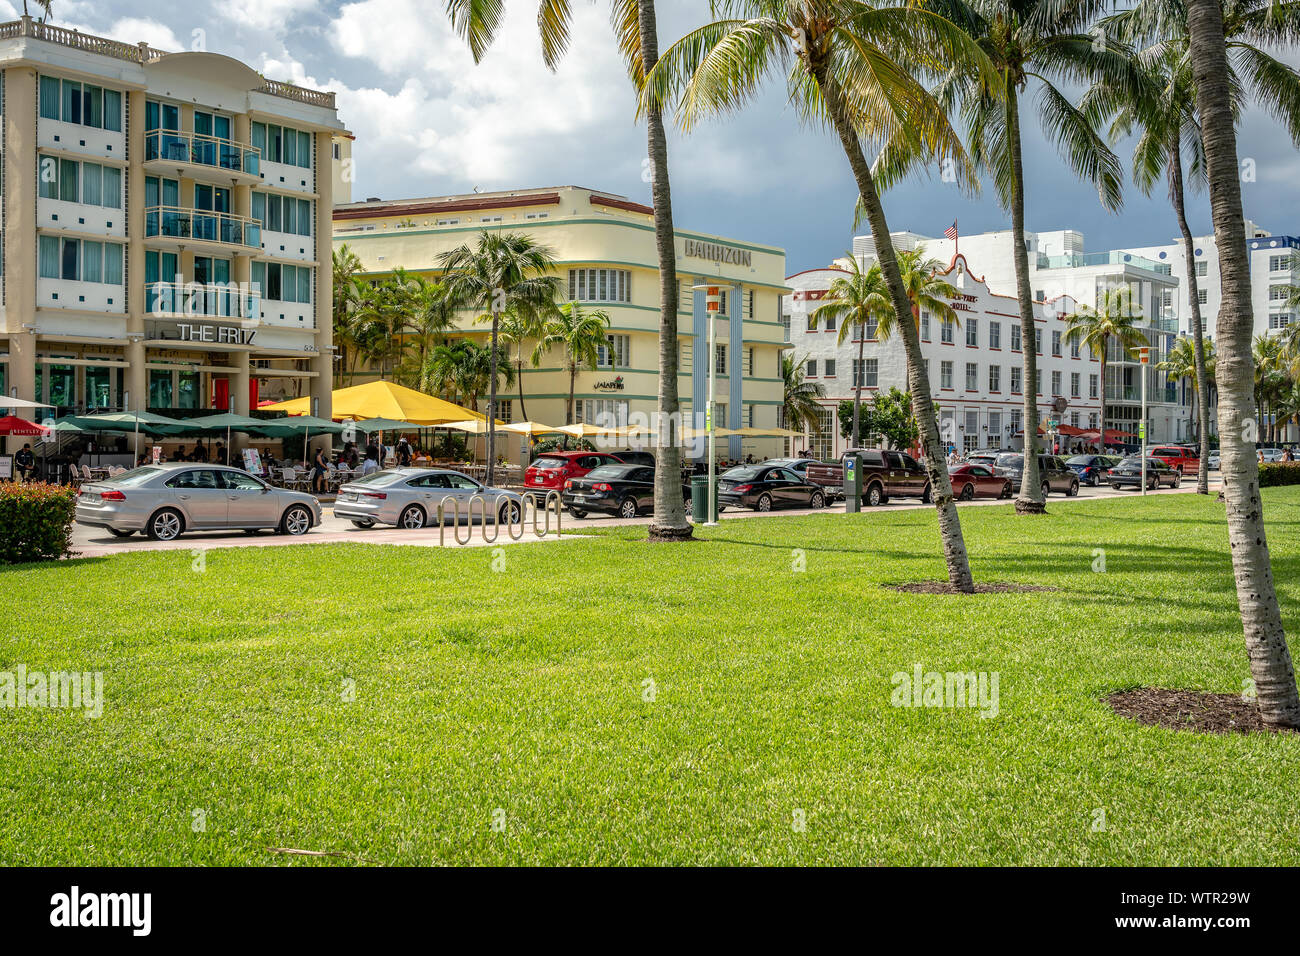 Miami Beach, Floride, USA - bâtiments historiques dans le quartier South Beach Banque D'Images